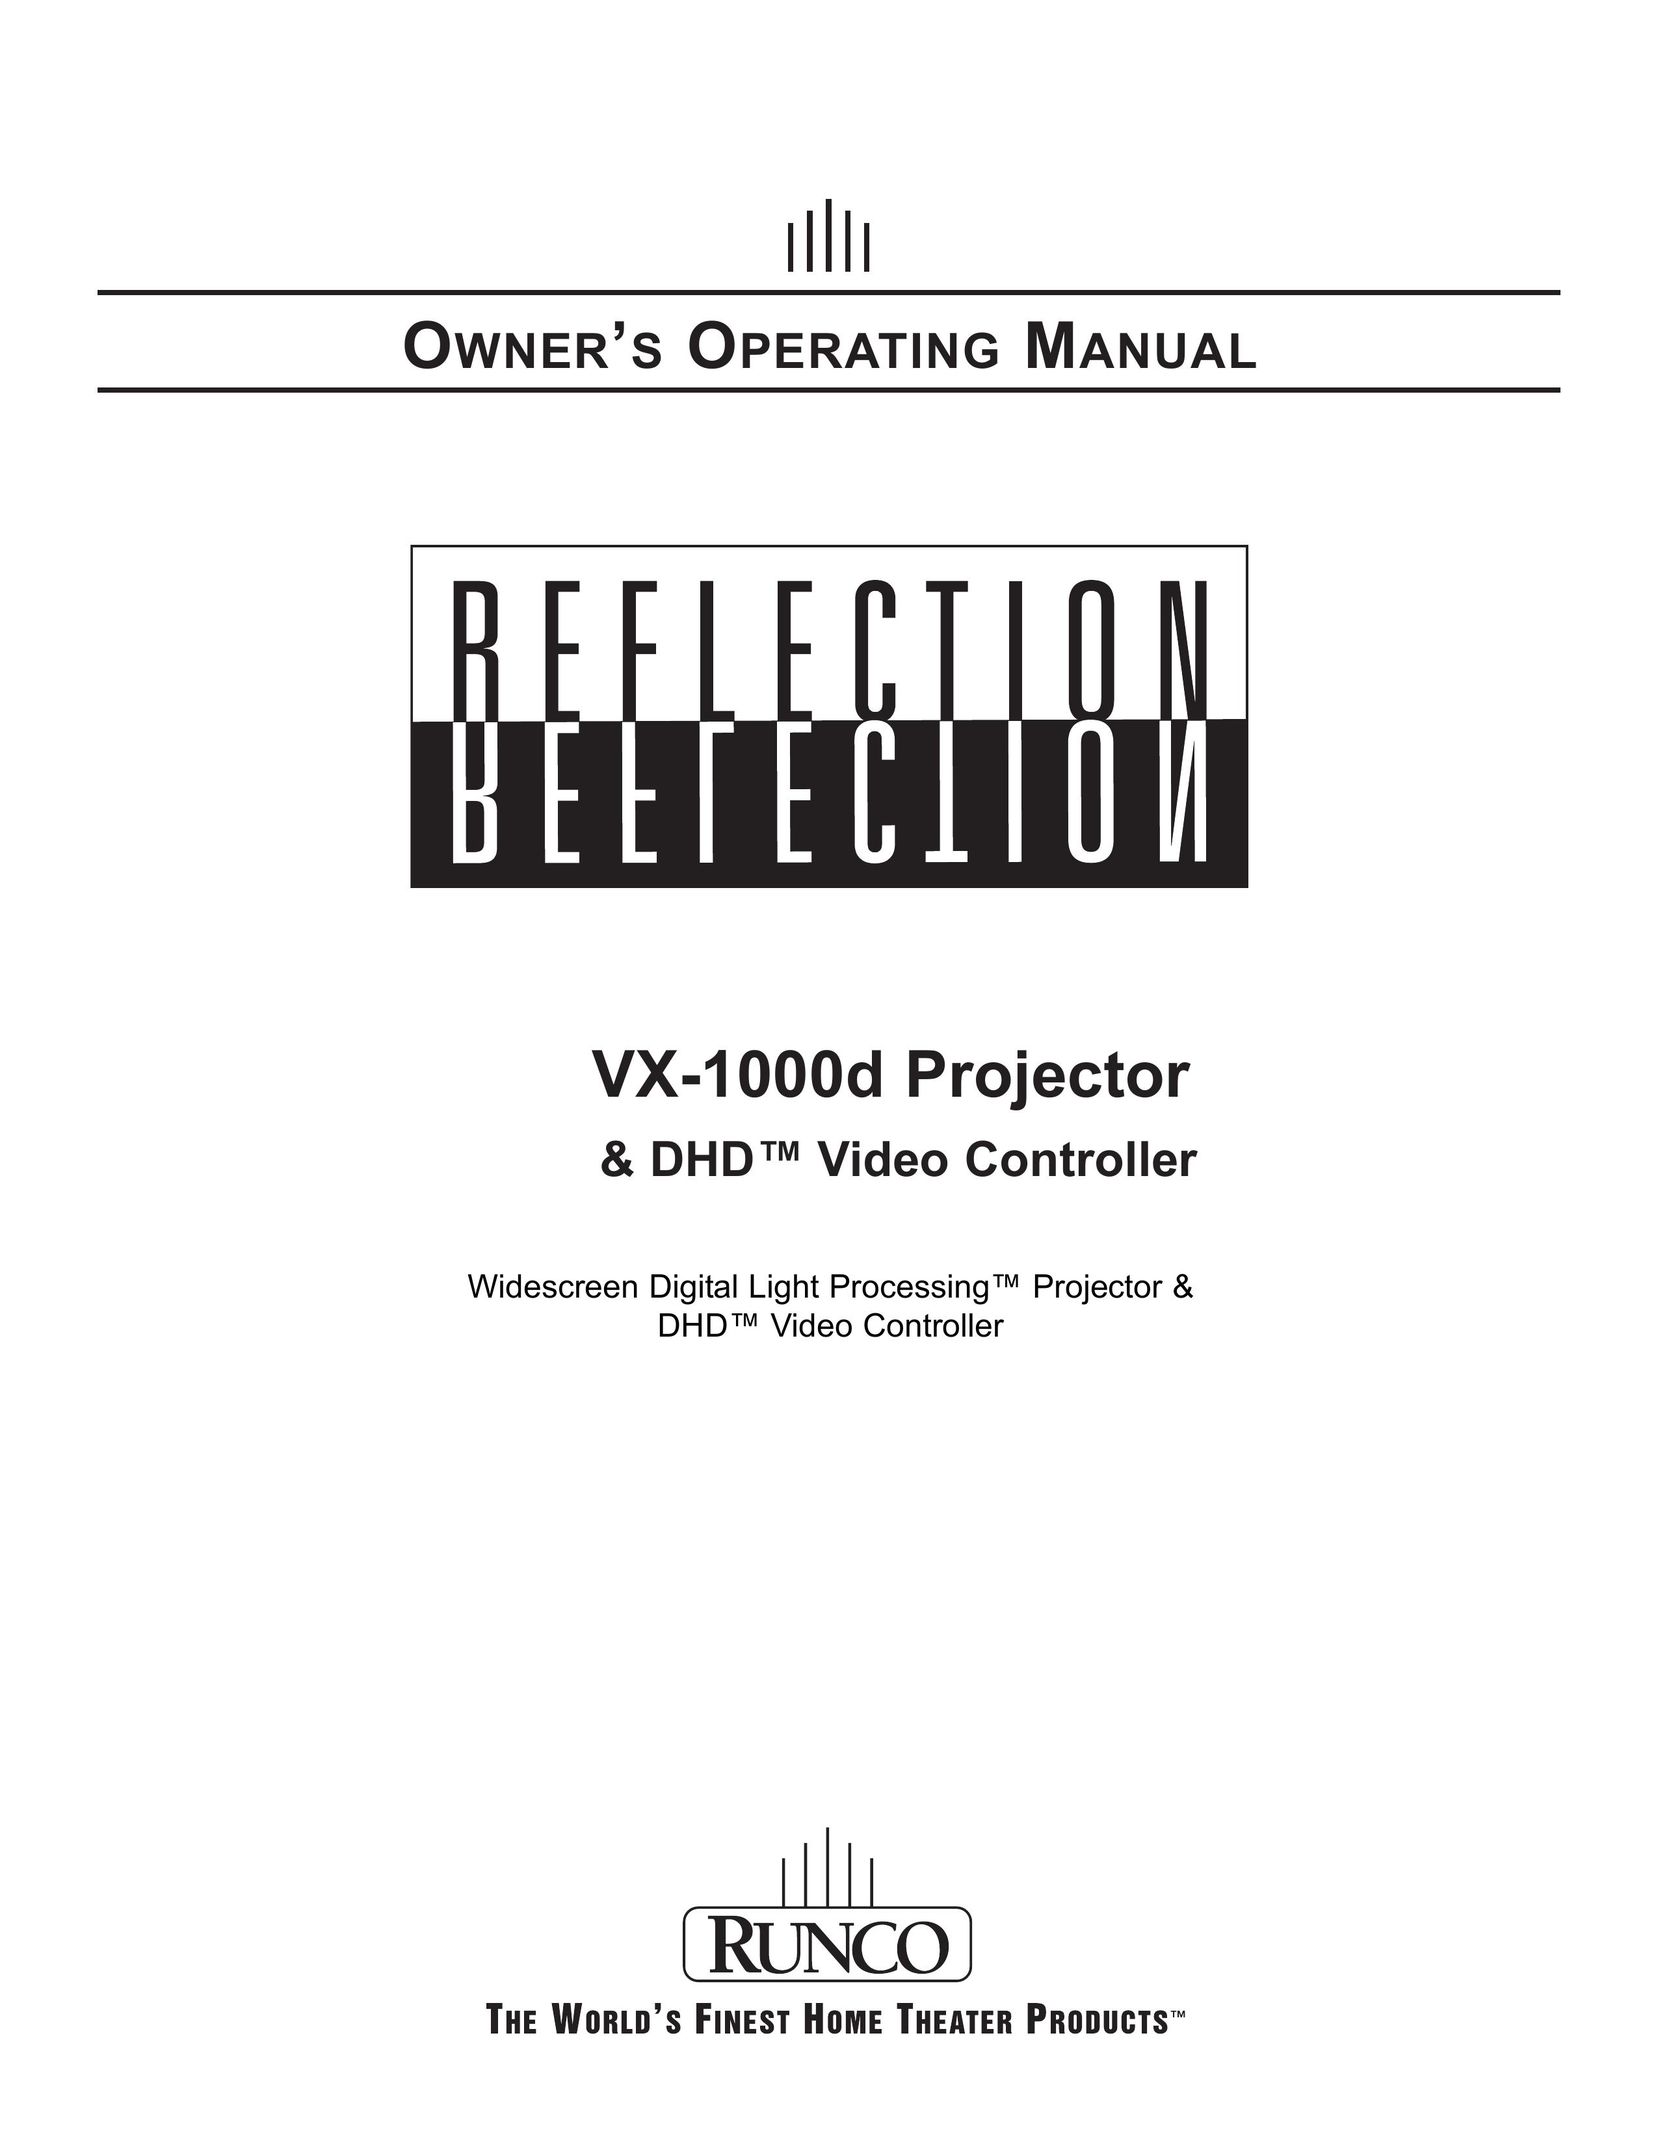 Runco VX-1000d Projector User Manual